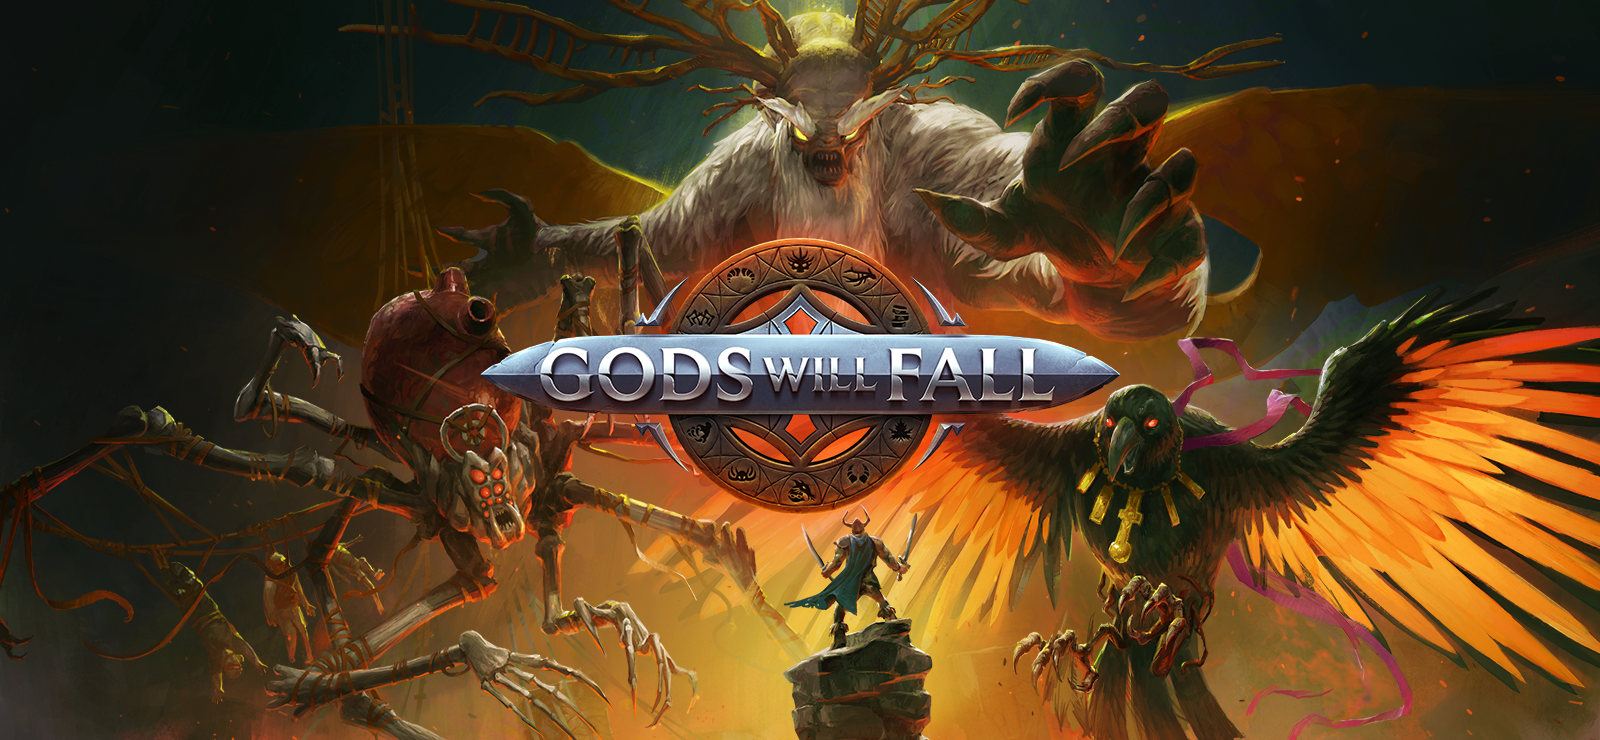 Gods Will Fall - Valiant Edition